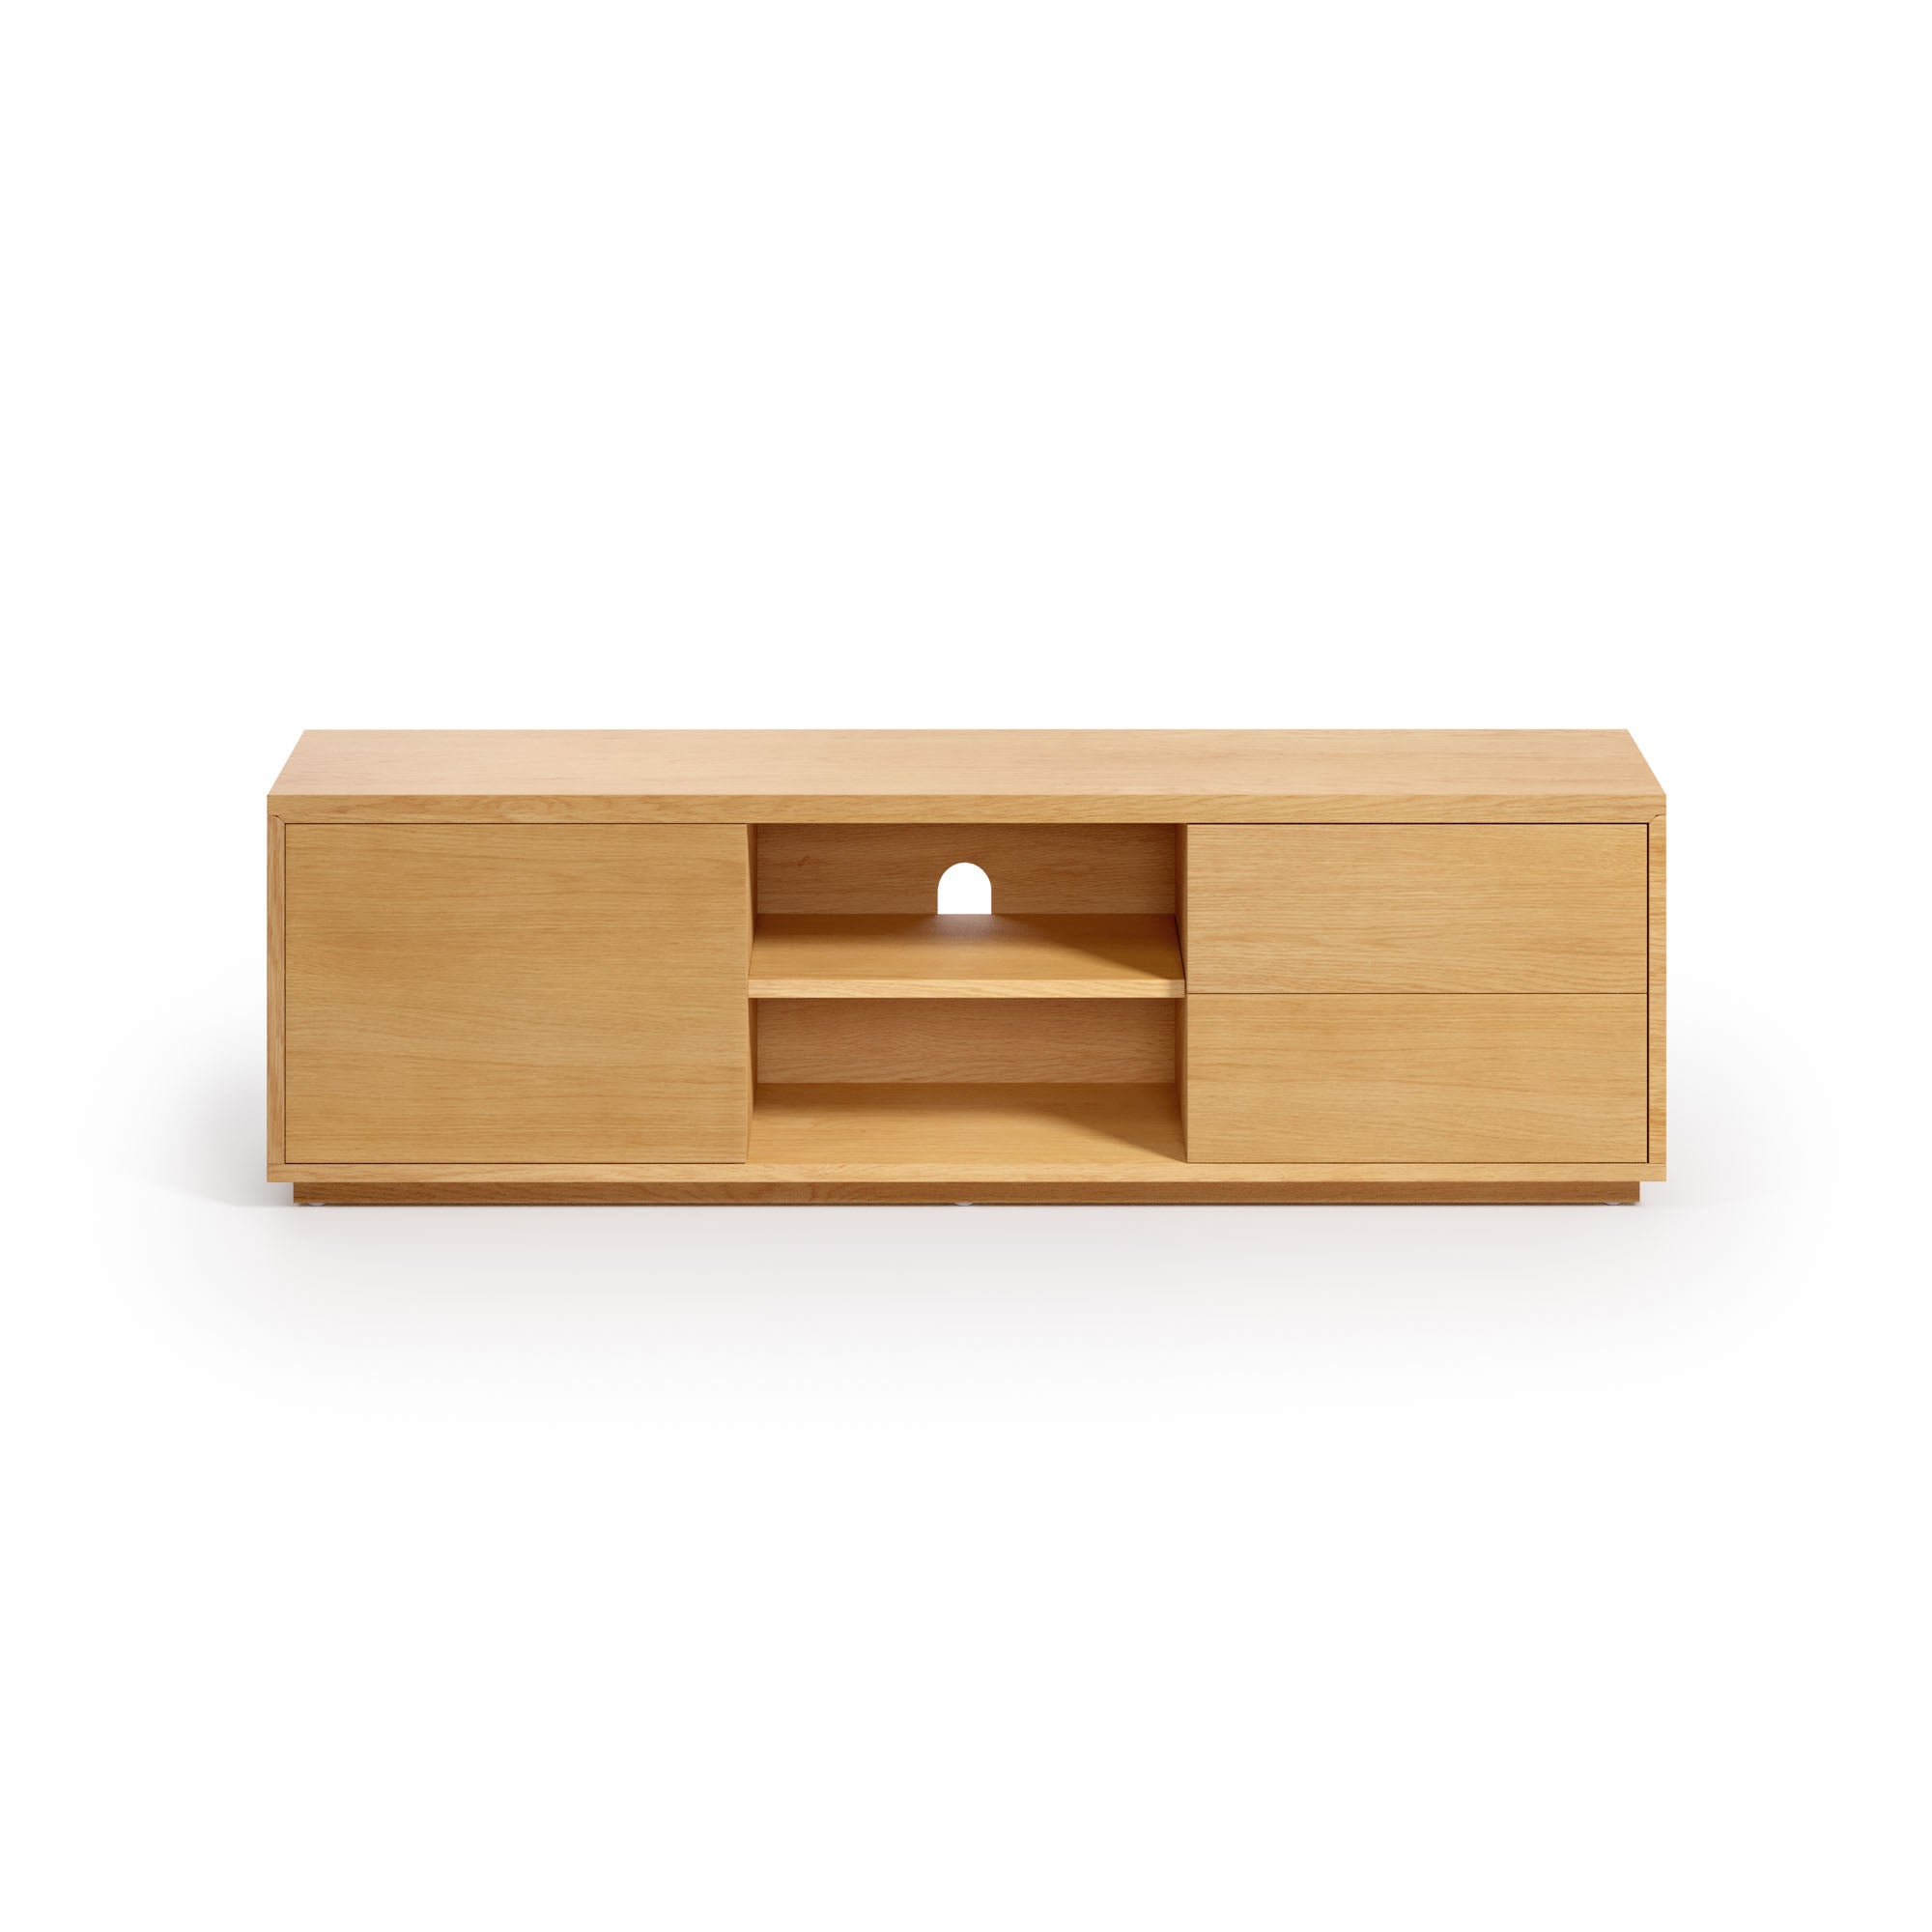 Abilen oak wood veneer single door TV stand with 2 drawers, 150 x 44 cm FSC 100%